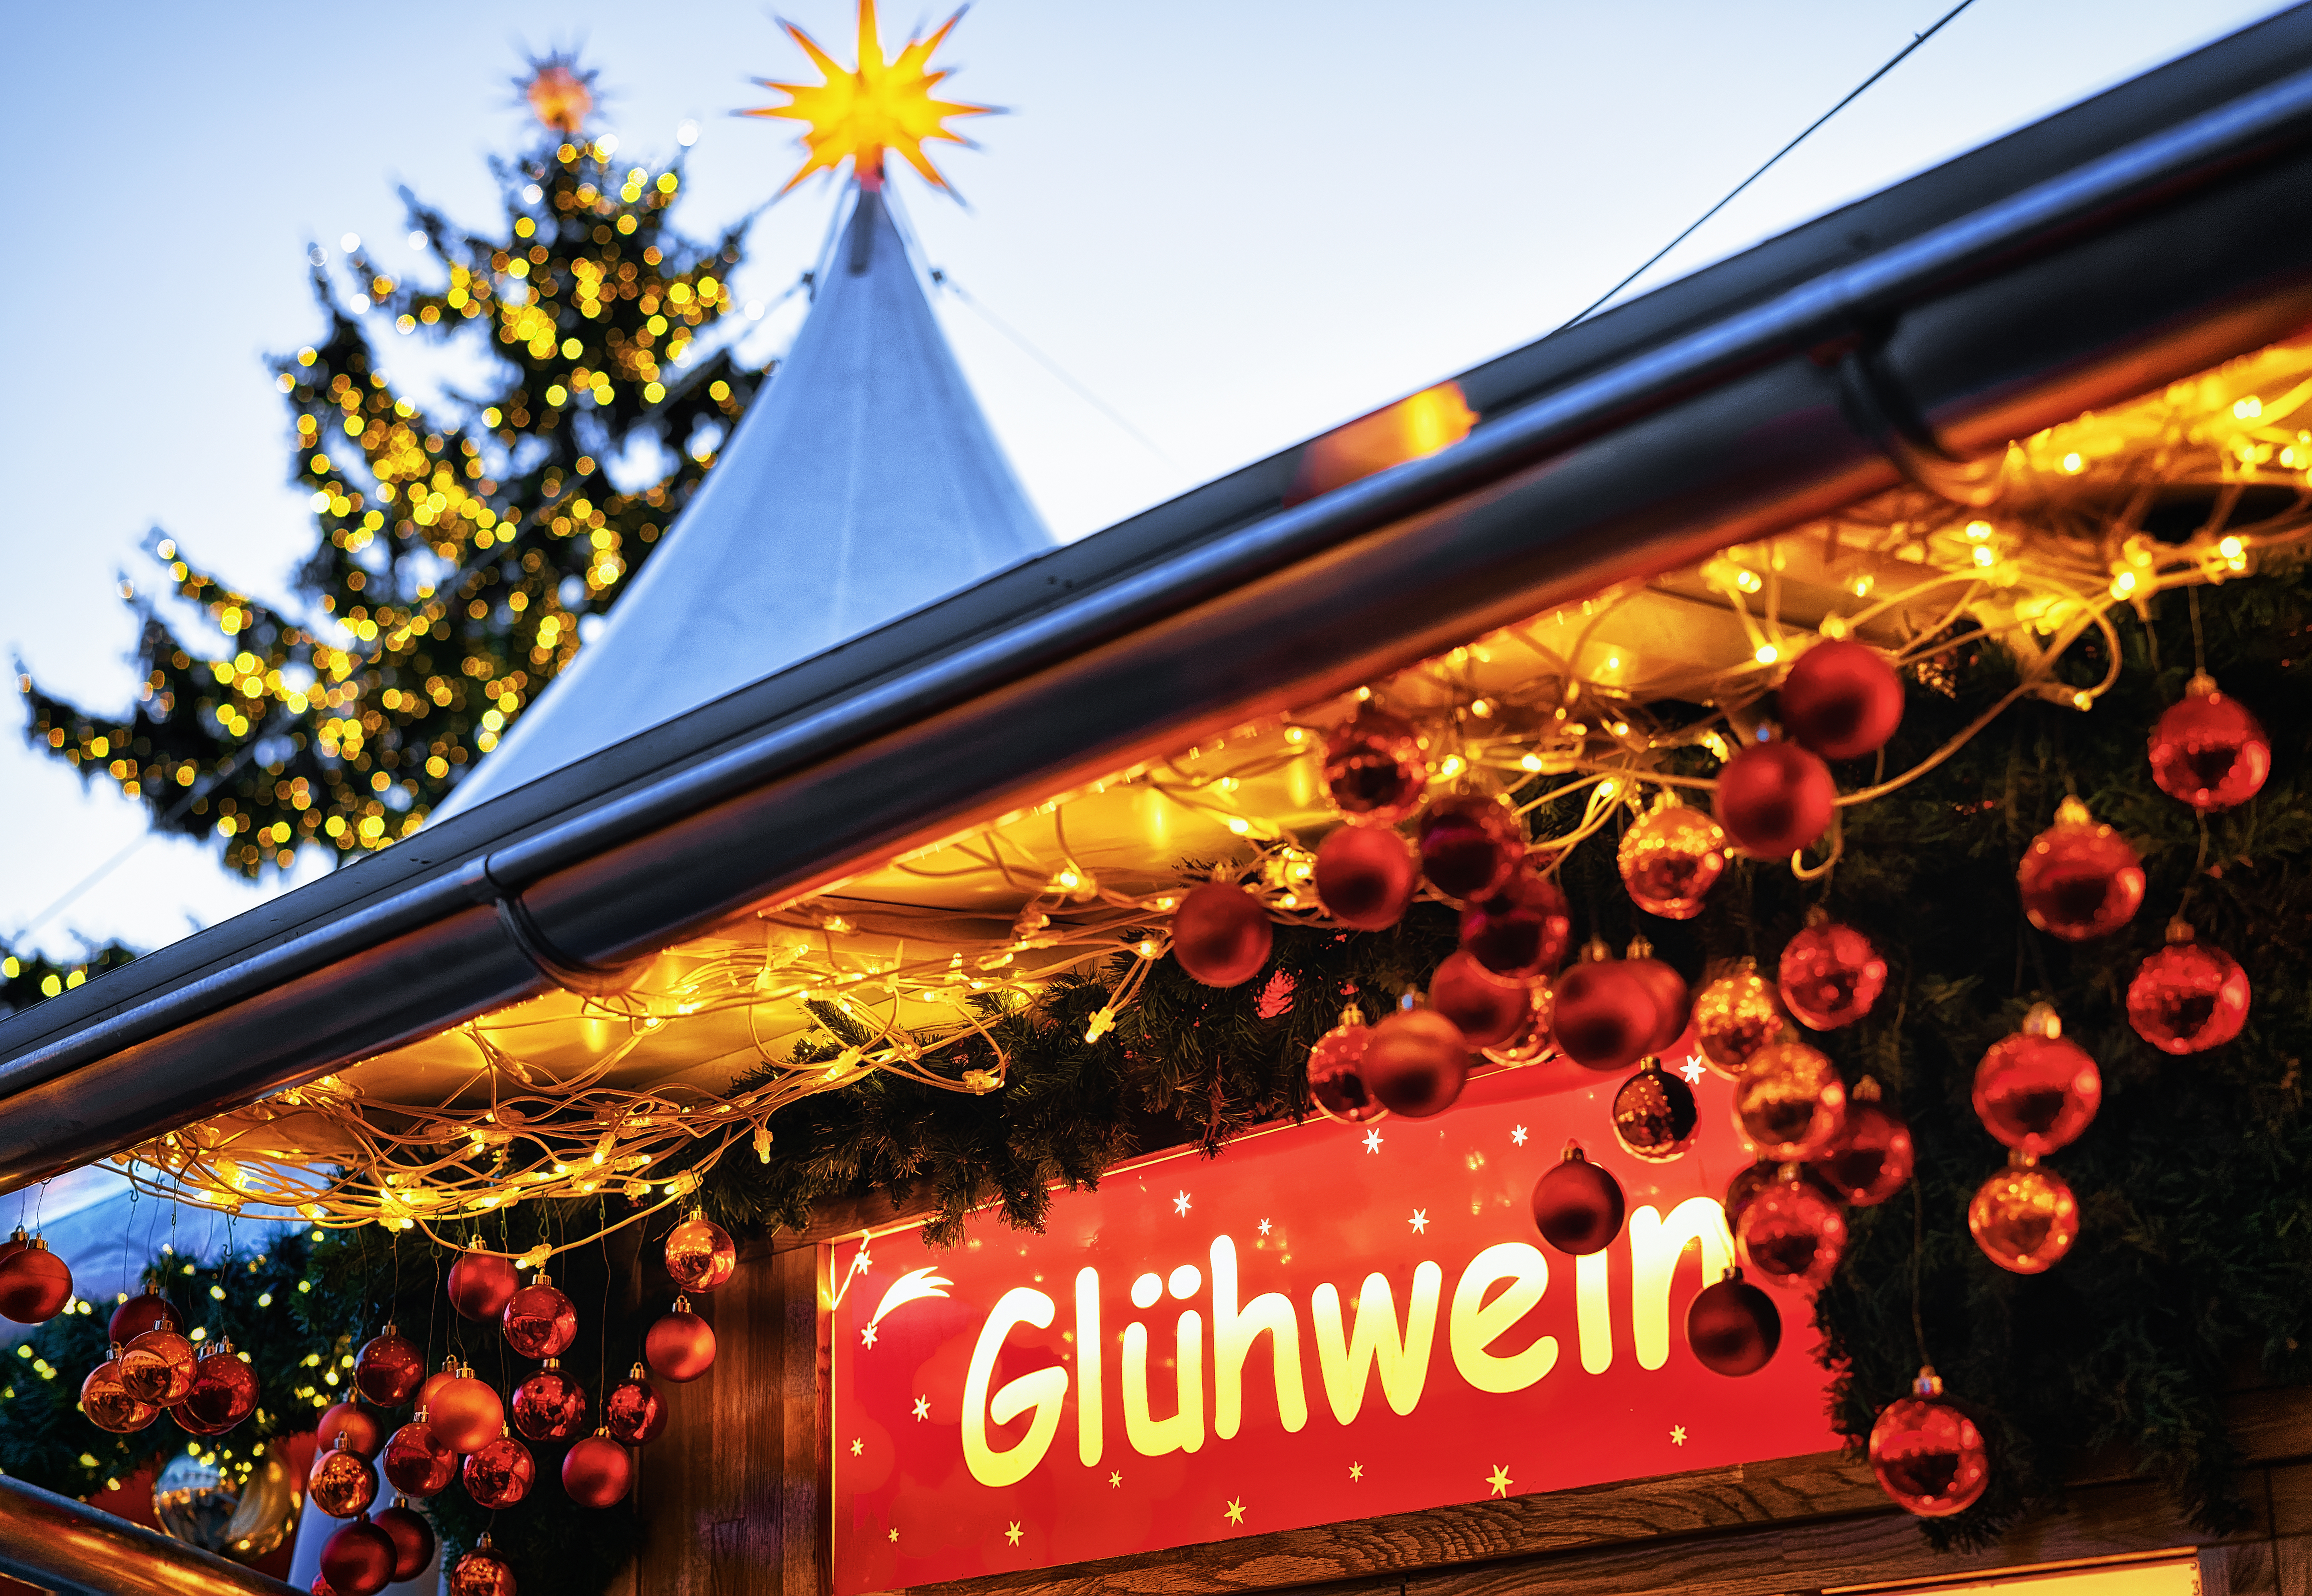 At blive fristet til et glas glühwein er uundgåeligt på et julemarked i Tyskland.